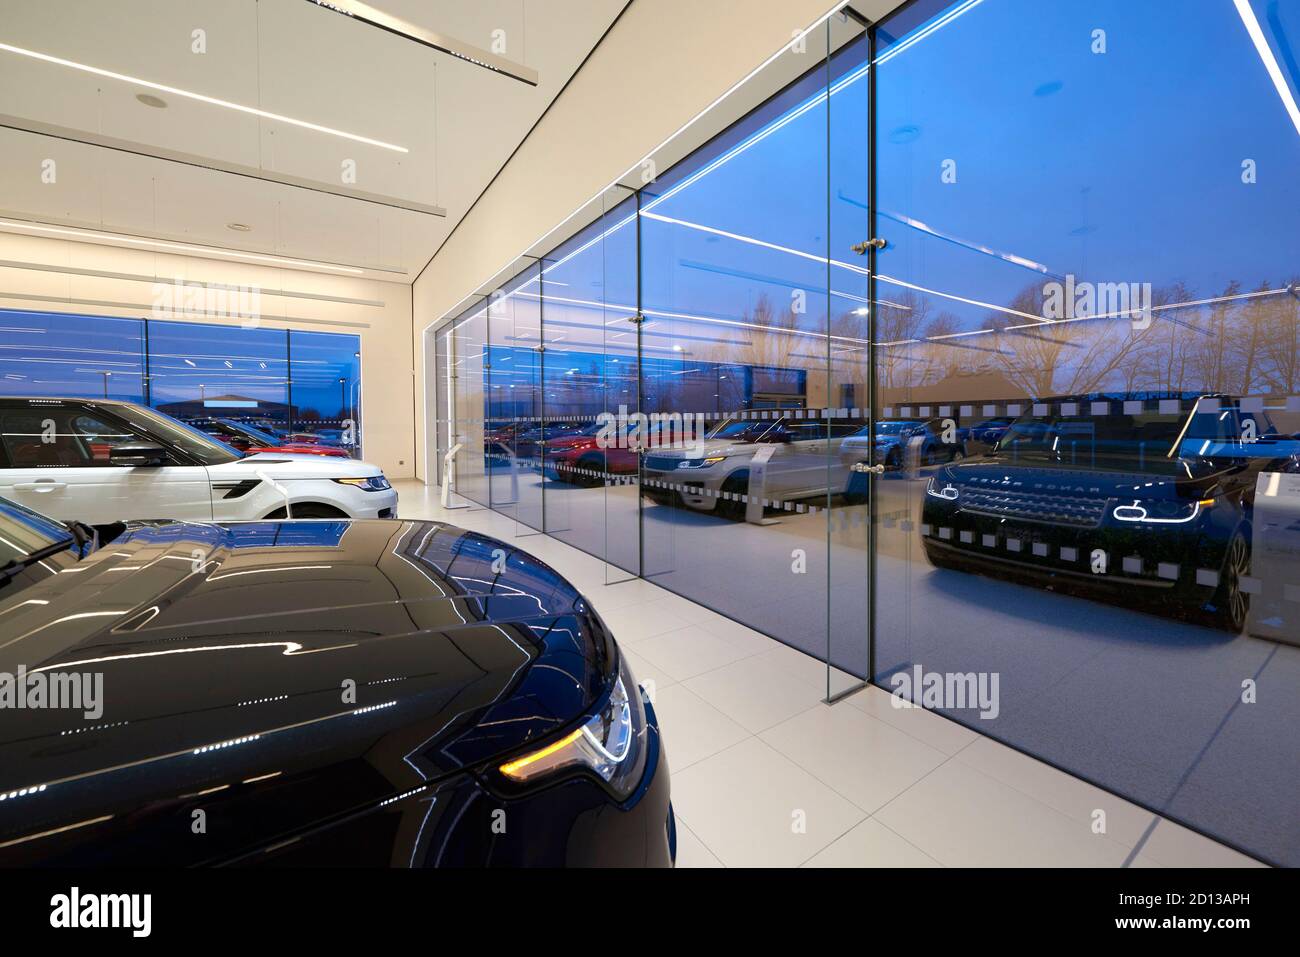 Concessionnaire Jaguar Land rover, Boston, est de l'Angleterre, Royaume-Uni Banque D'Images